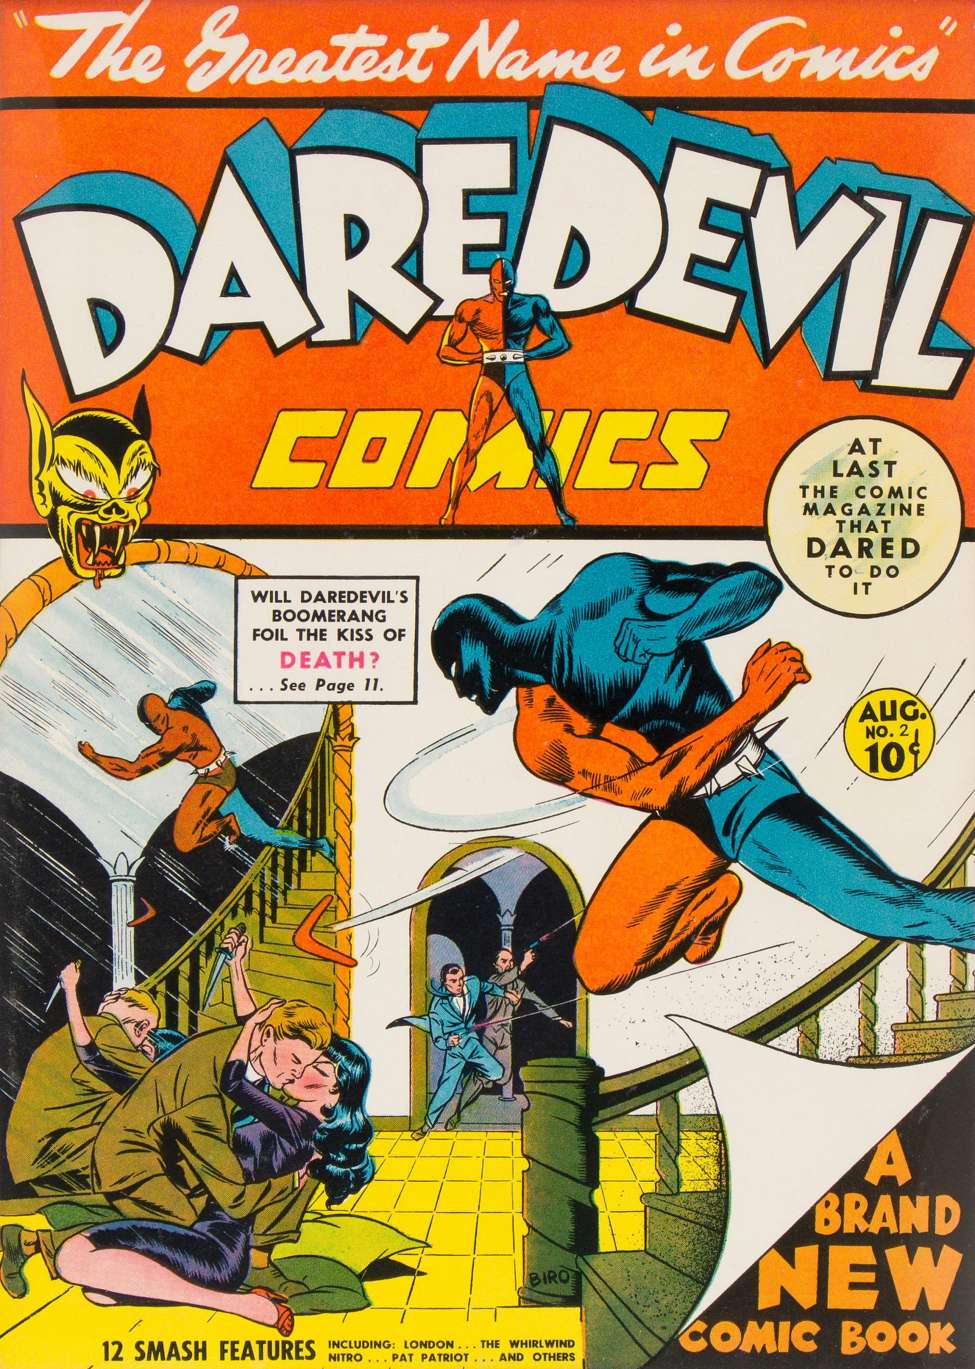 Comic Book Cover For Daredevil Comics 2 (1 fiche) - Version 2